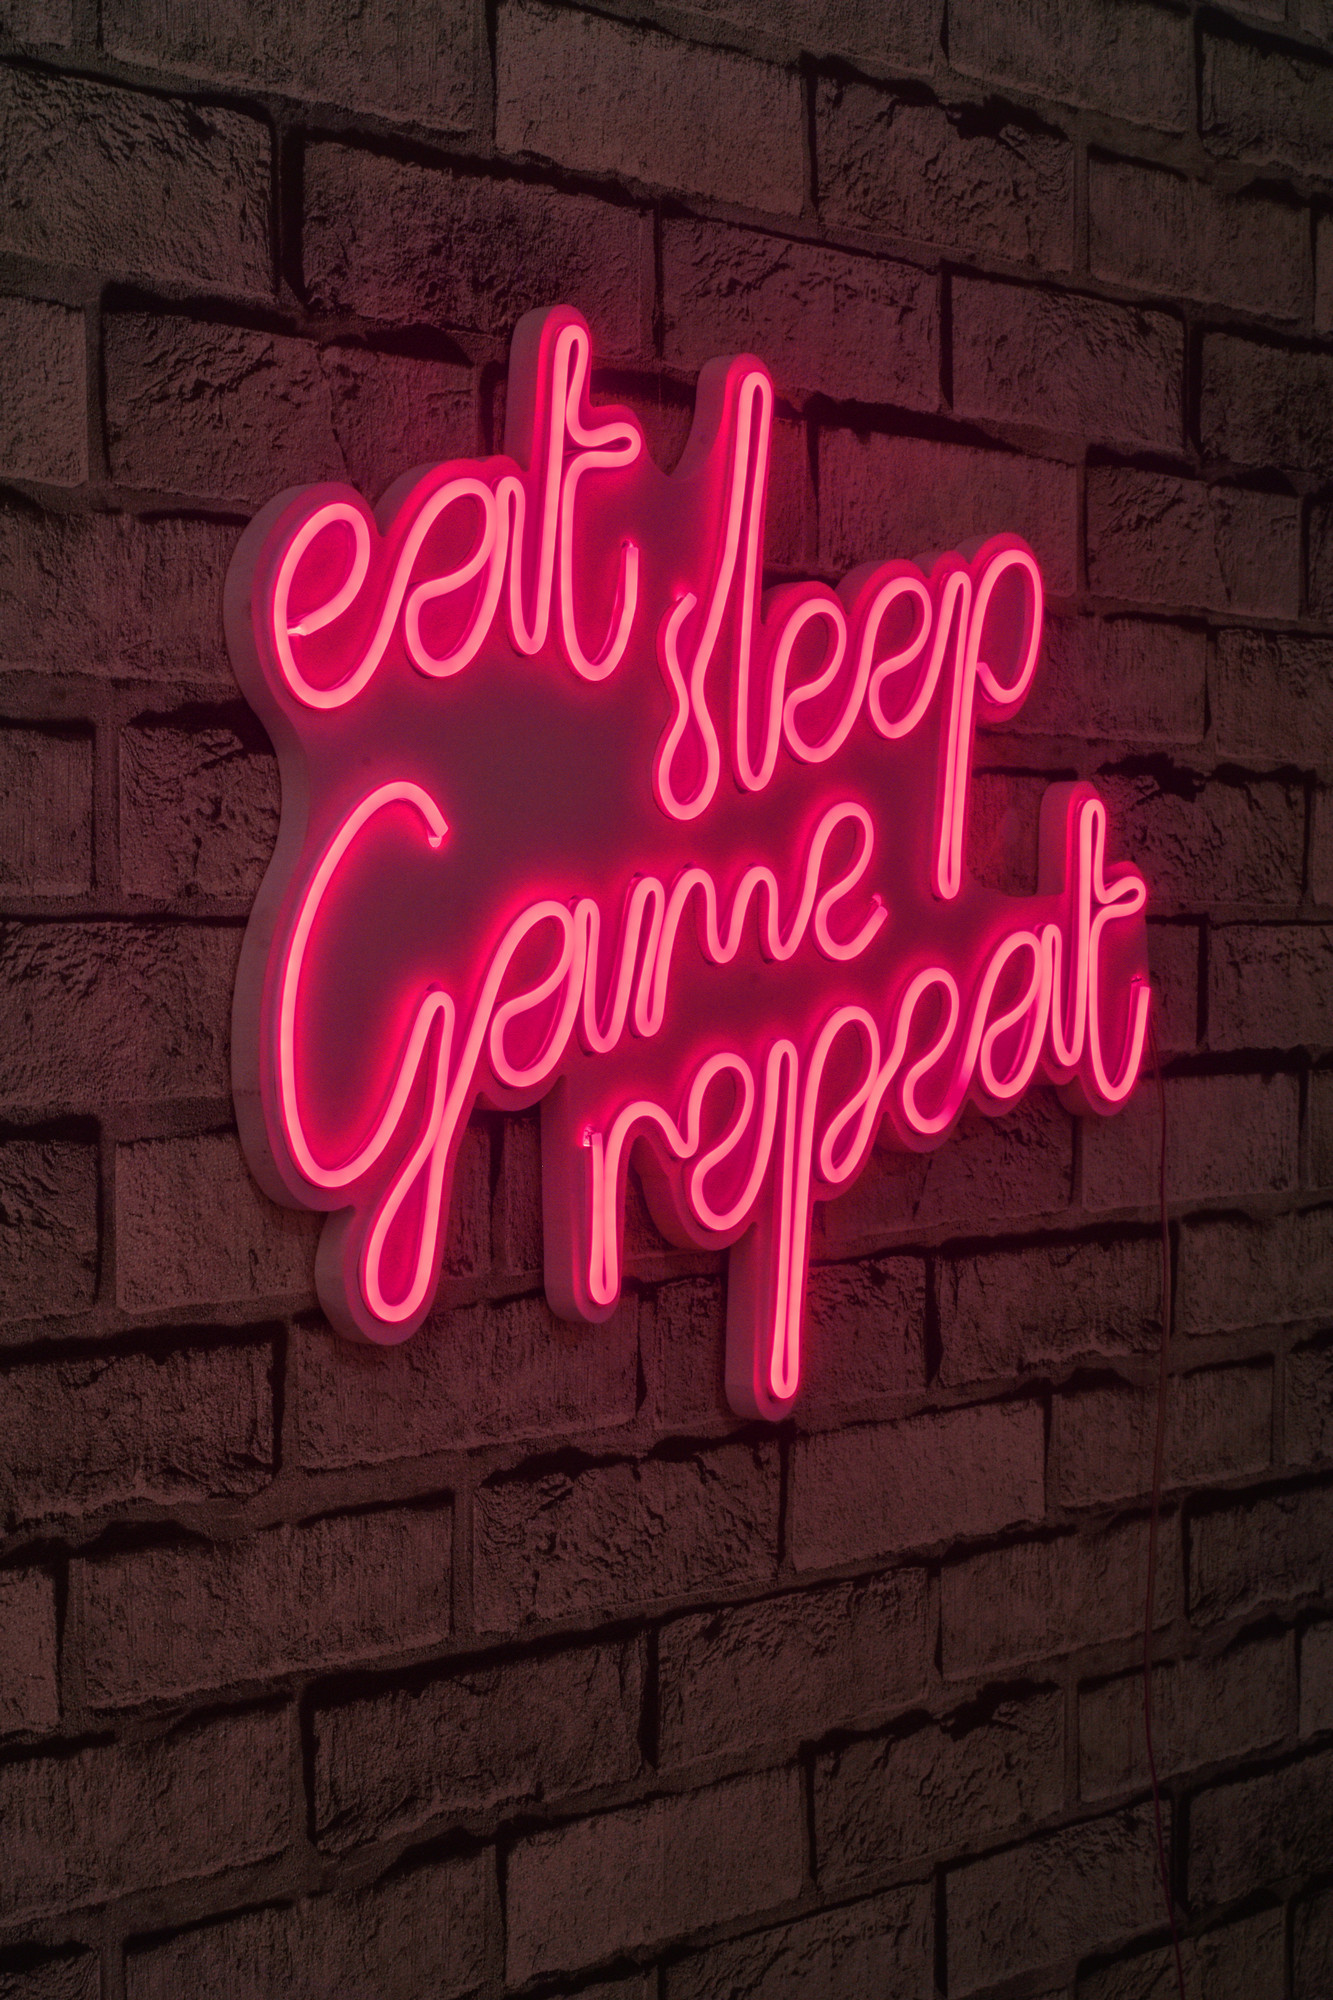 ASIR Dekorativní LED osvětlení EAT SLEEP GAME REPEAT růžová